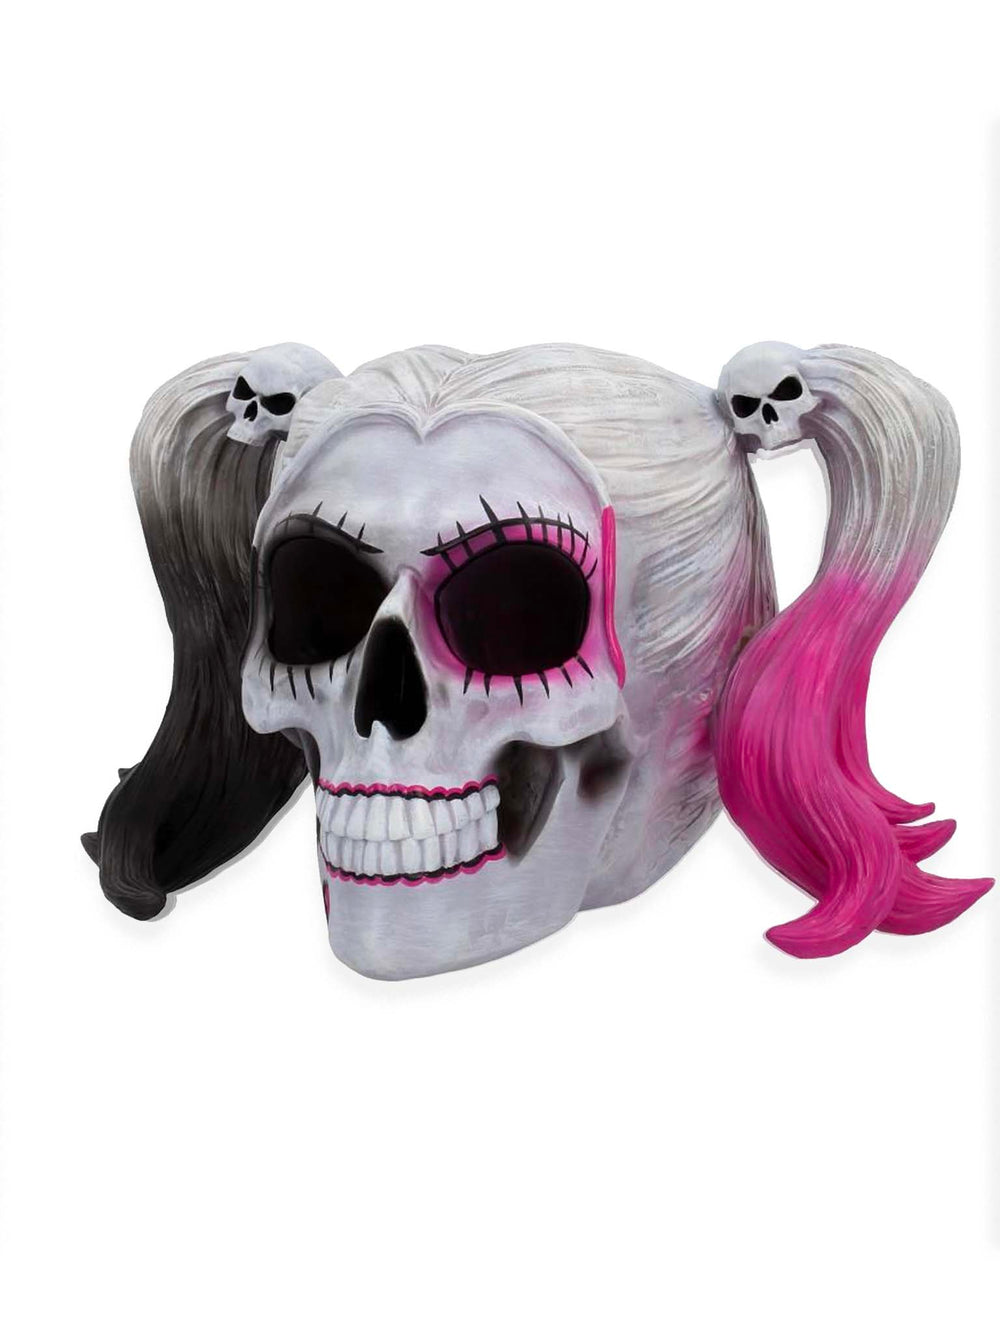 Little Monster Pigtailed Troublemaker Skull, Harley Quinn Skull, Decorative Skull